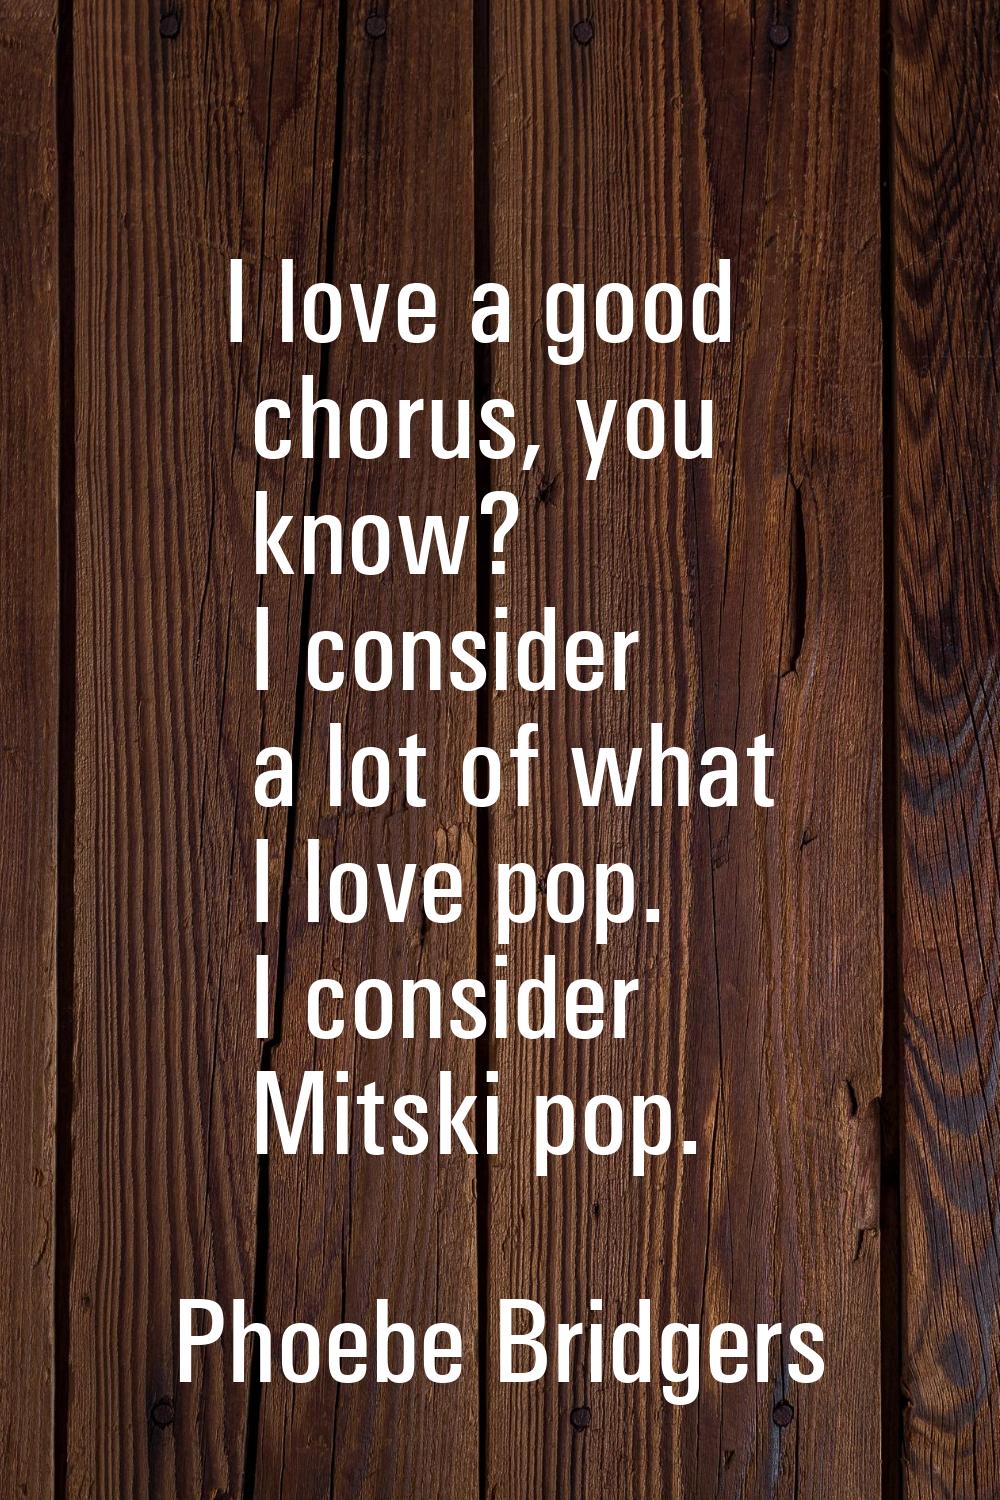 I love a good chorus, you know? I consider a lot of what I love pop. I consider Mitski pop.